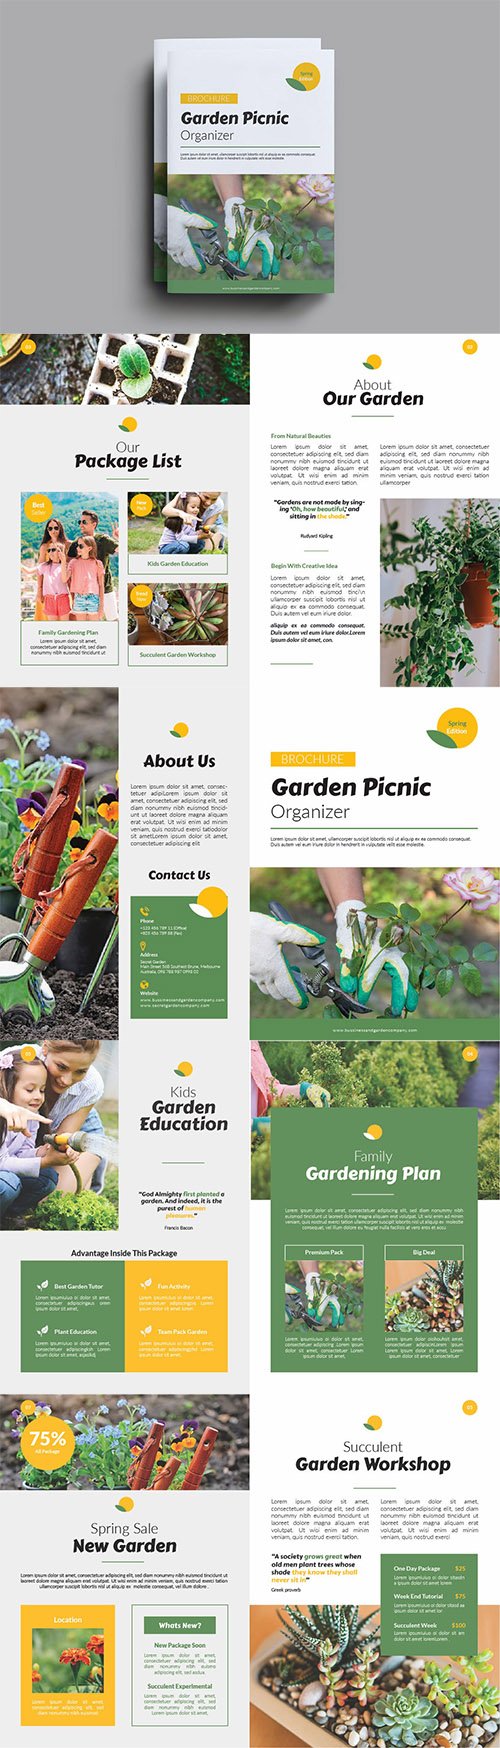 Garden Picnic Organizer Brochure